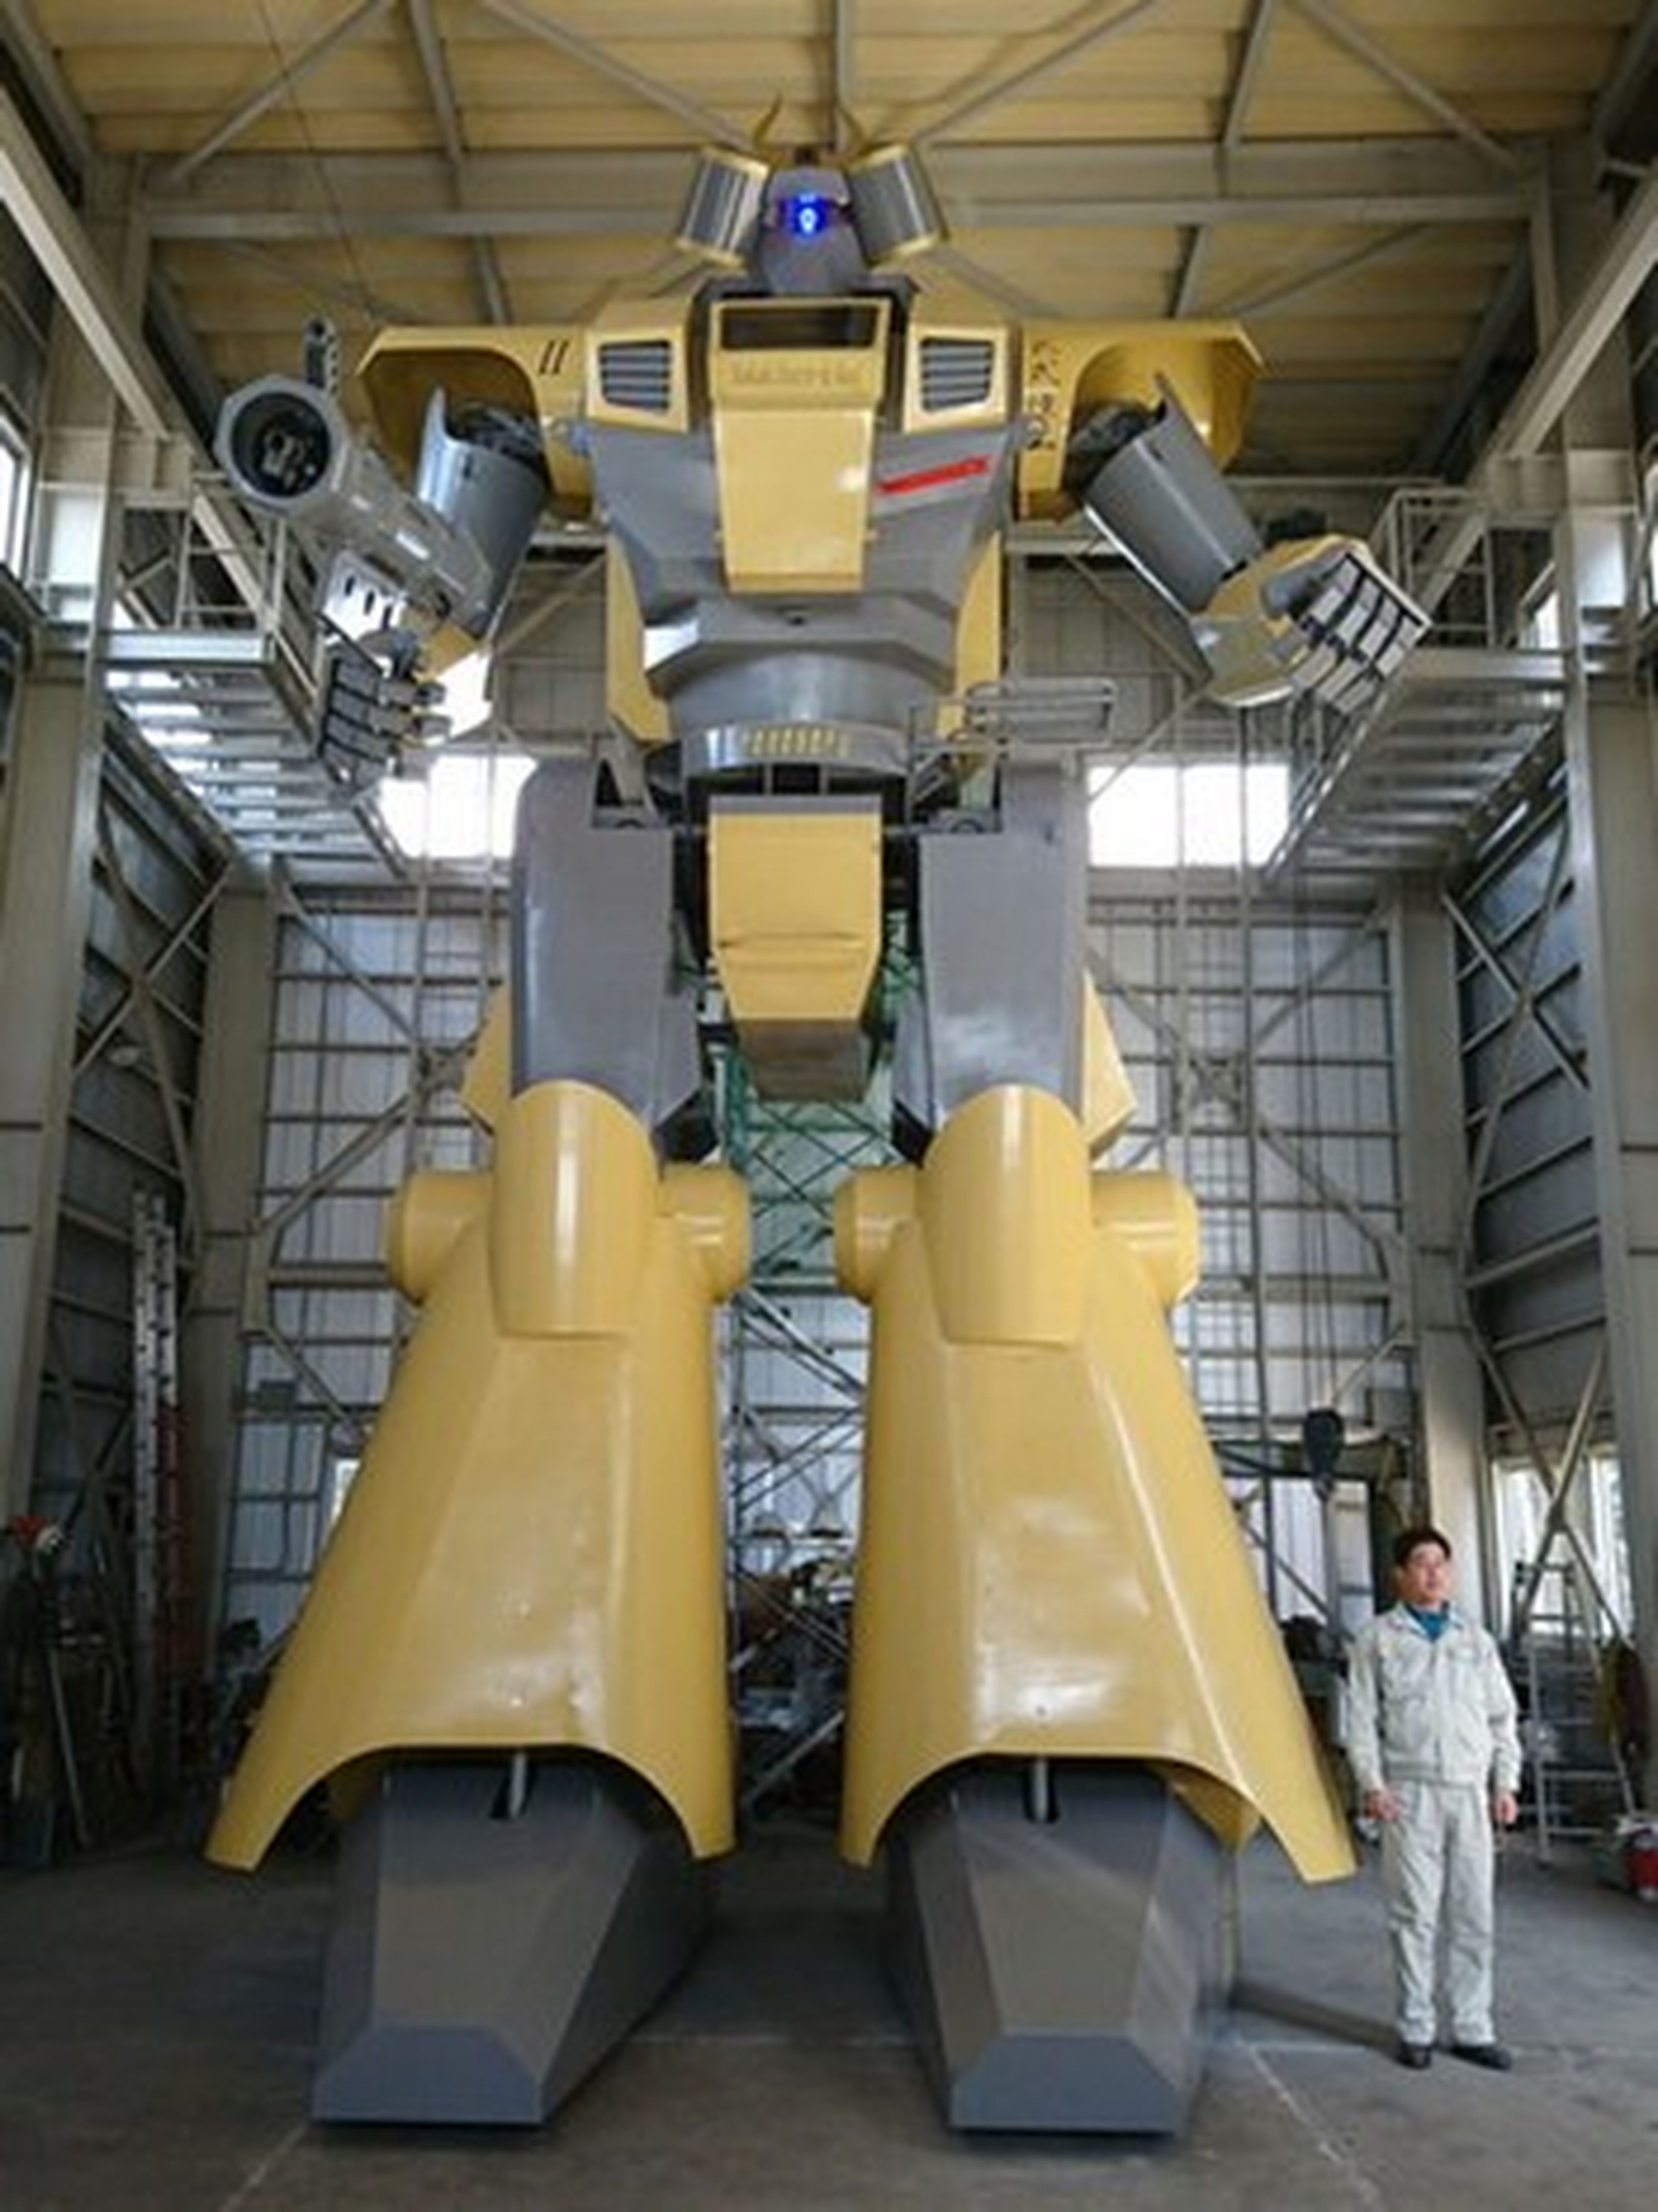 Robots gigantes pilotados por niños, así se divierten en Japón